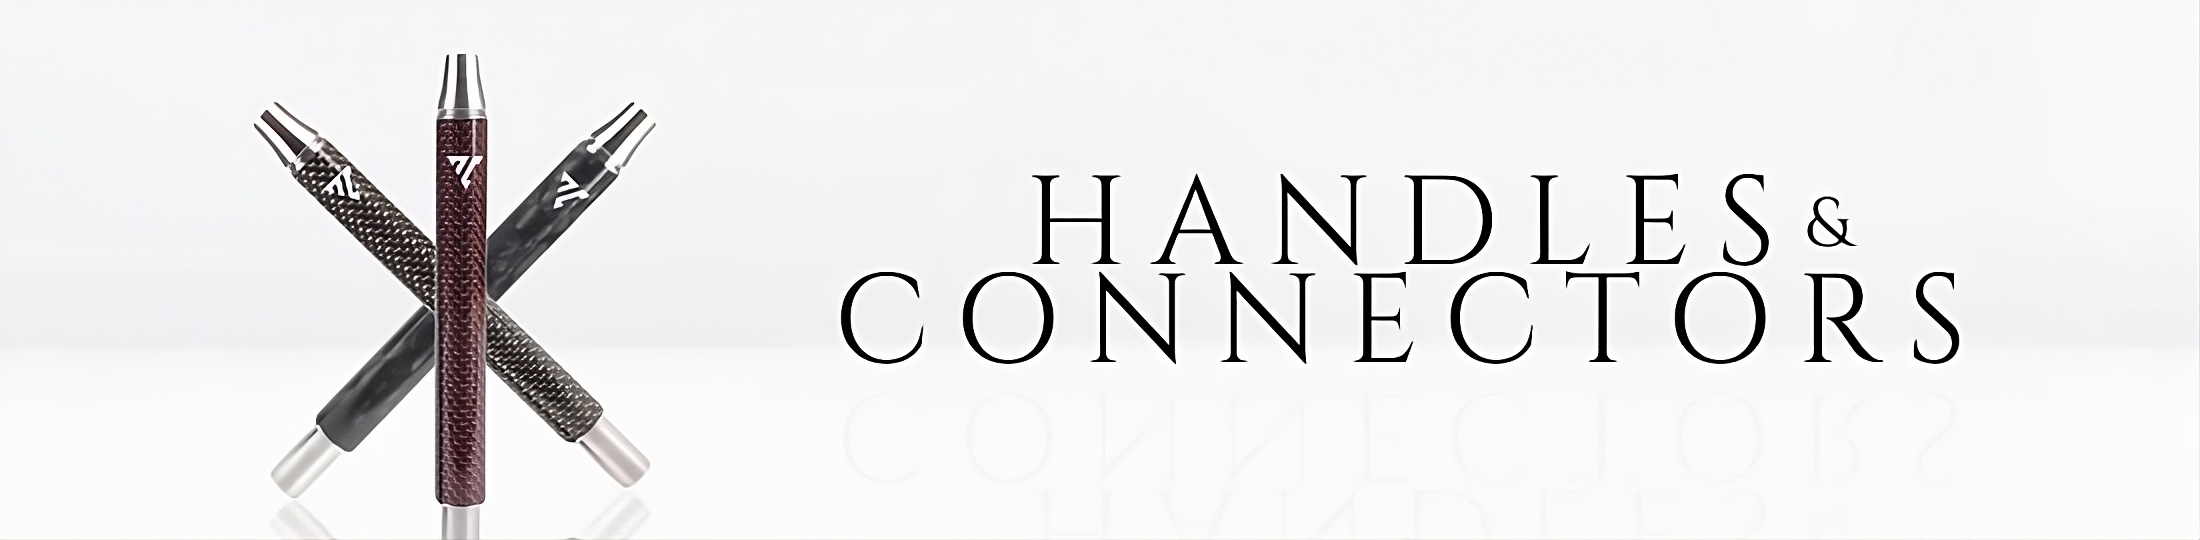 Handles & Connectors